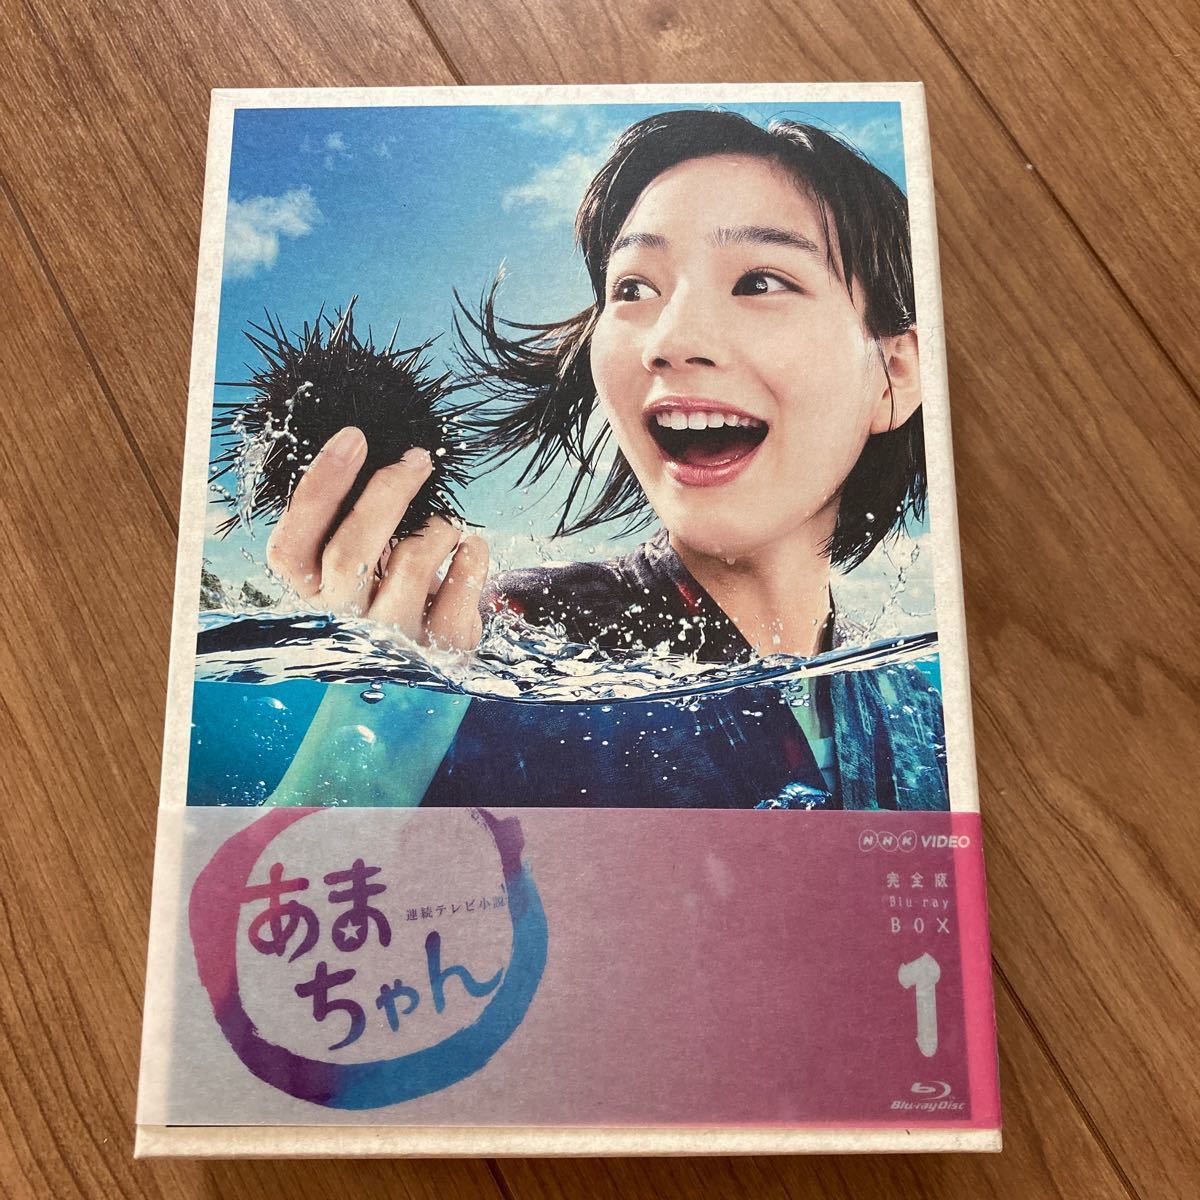 連続テレビ小説 あまちゃん 完全版 Blu-ray BOX 1〈4枚組〉